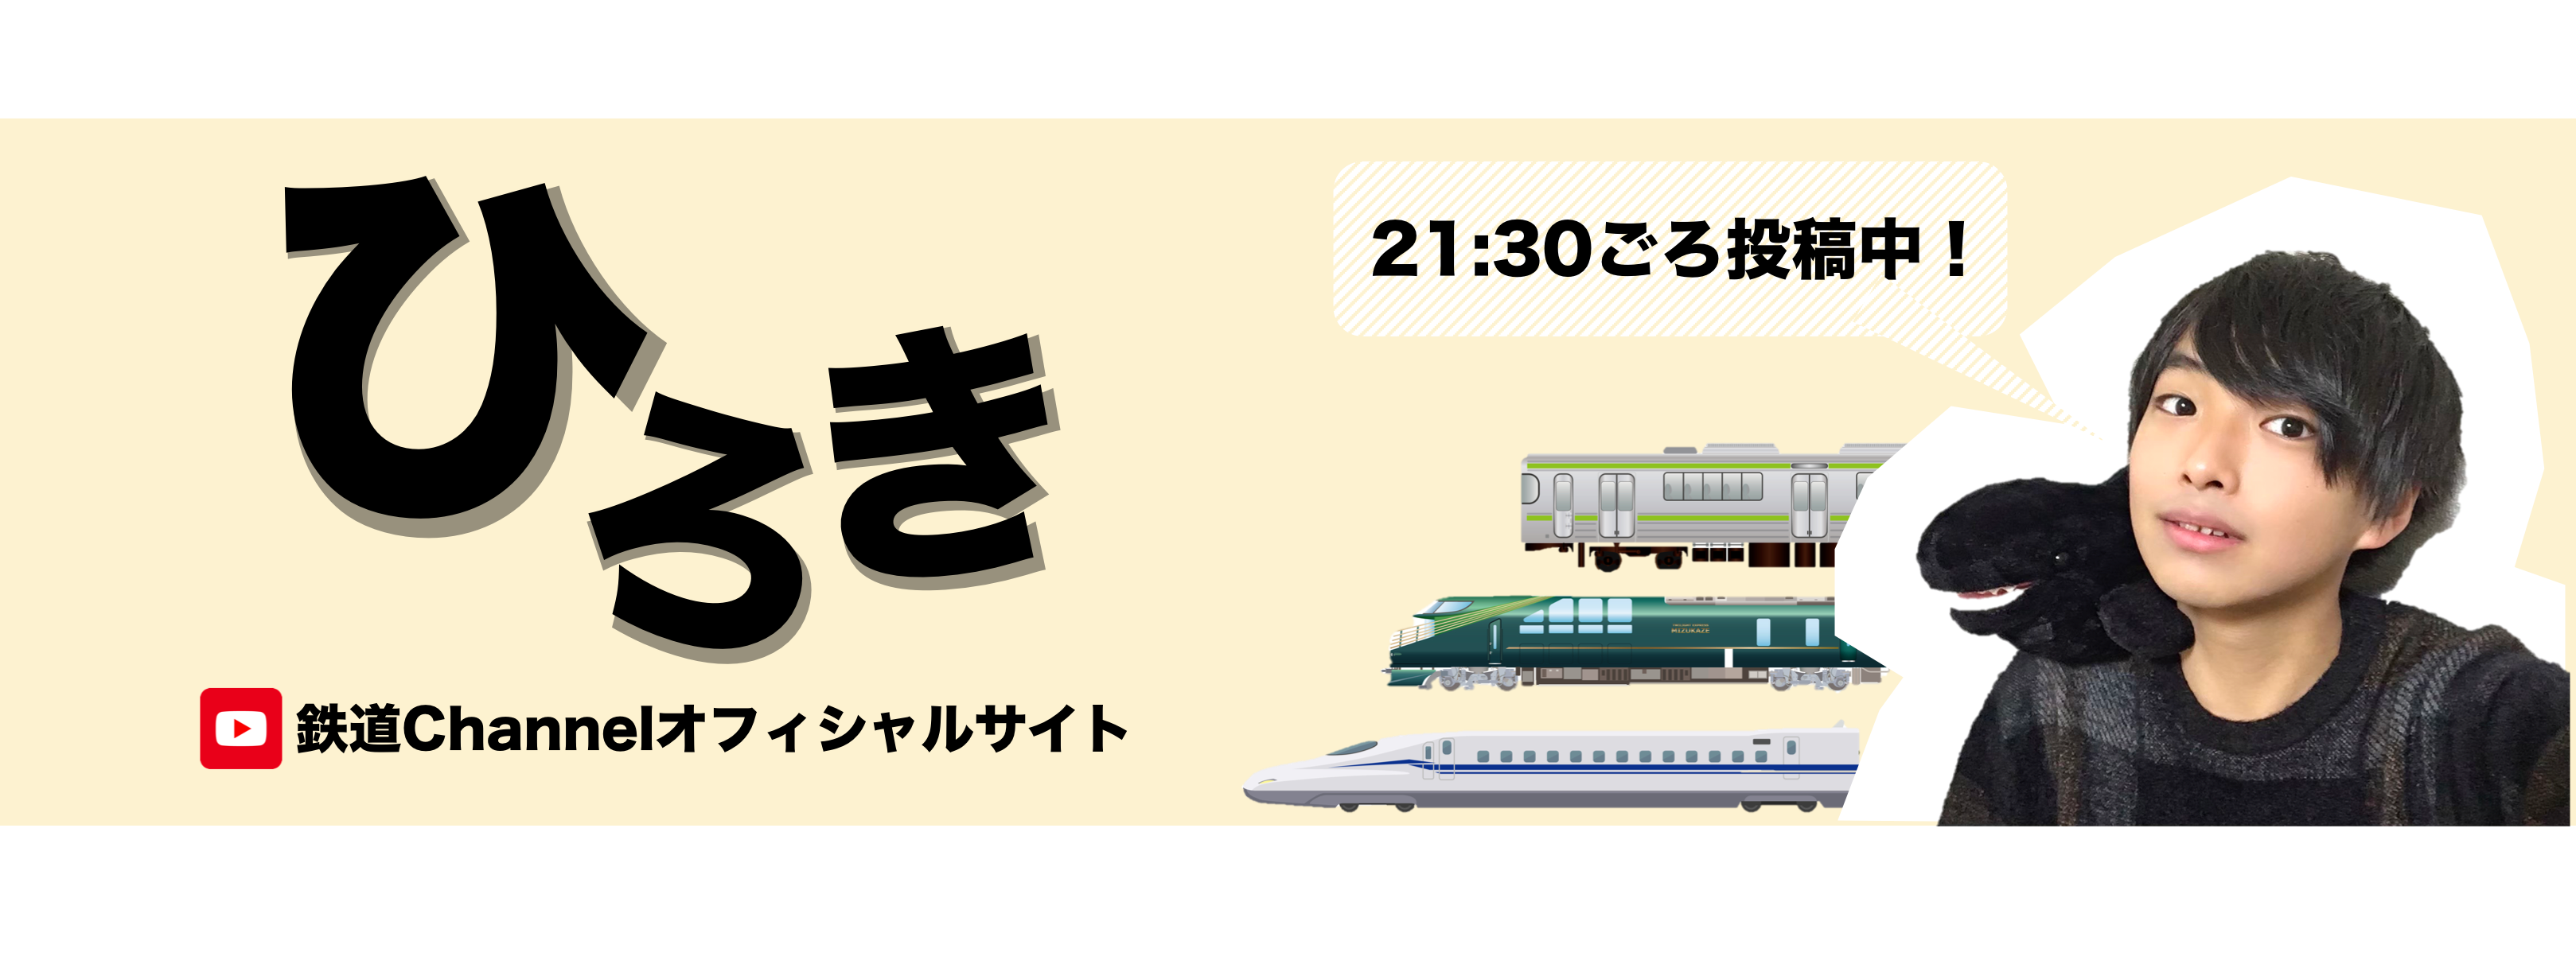 ひろき/鉄道チャンネル-アイキャッチ